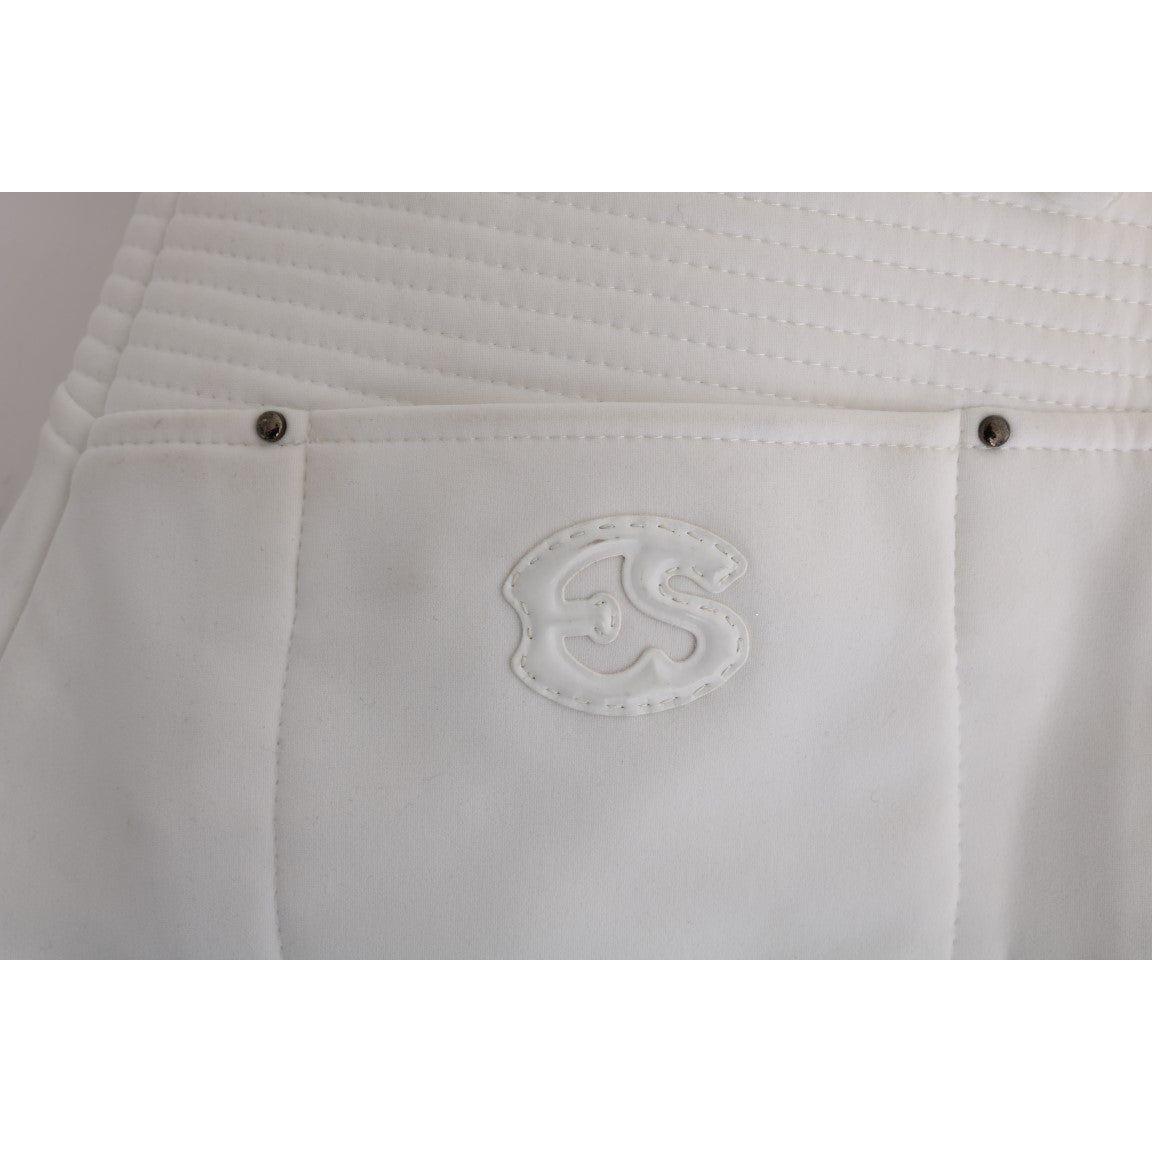 Ermanno Scervino Chic White Slim Fit Cotton Pants white-cotton-slim-fit-casual-pants-1 449212-white-cotton-slim-fit-casual-pants-2-7.jpg